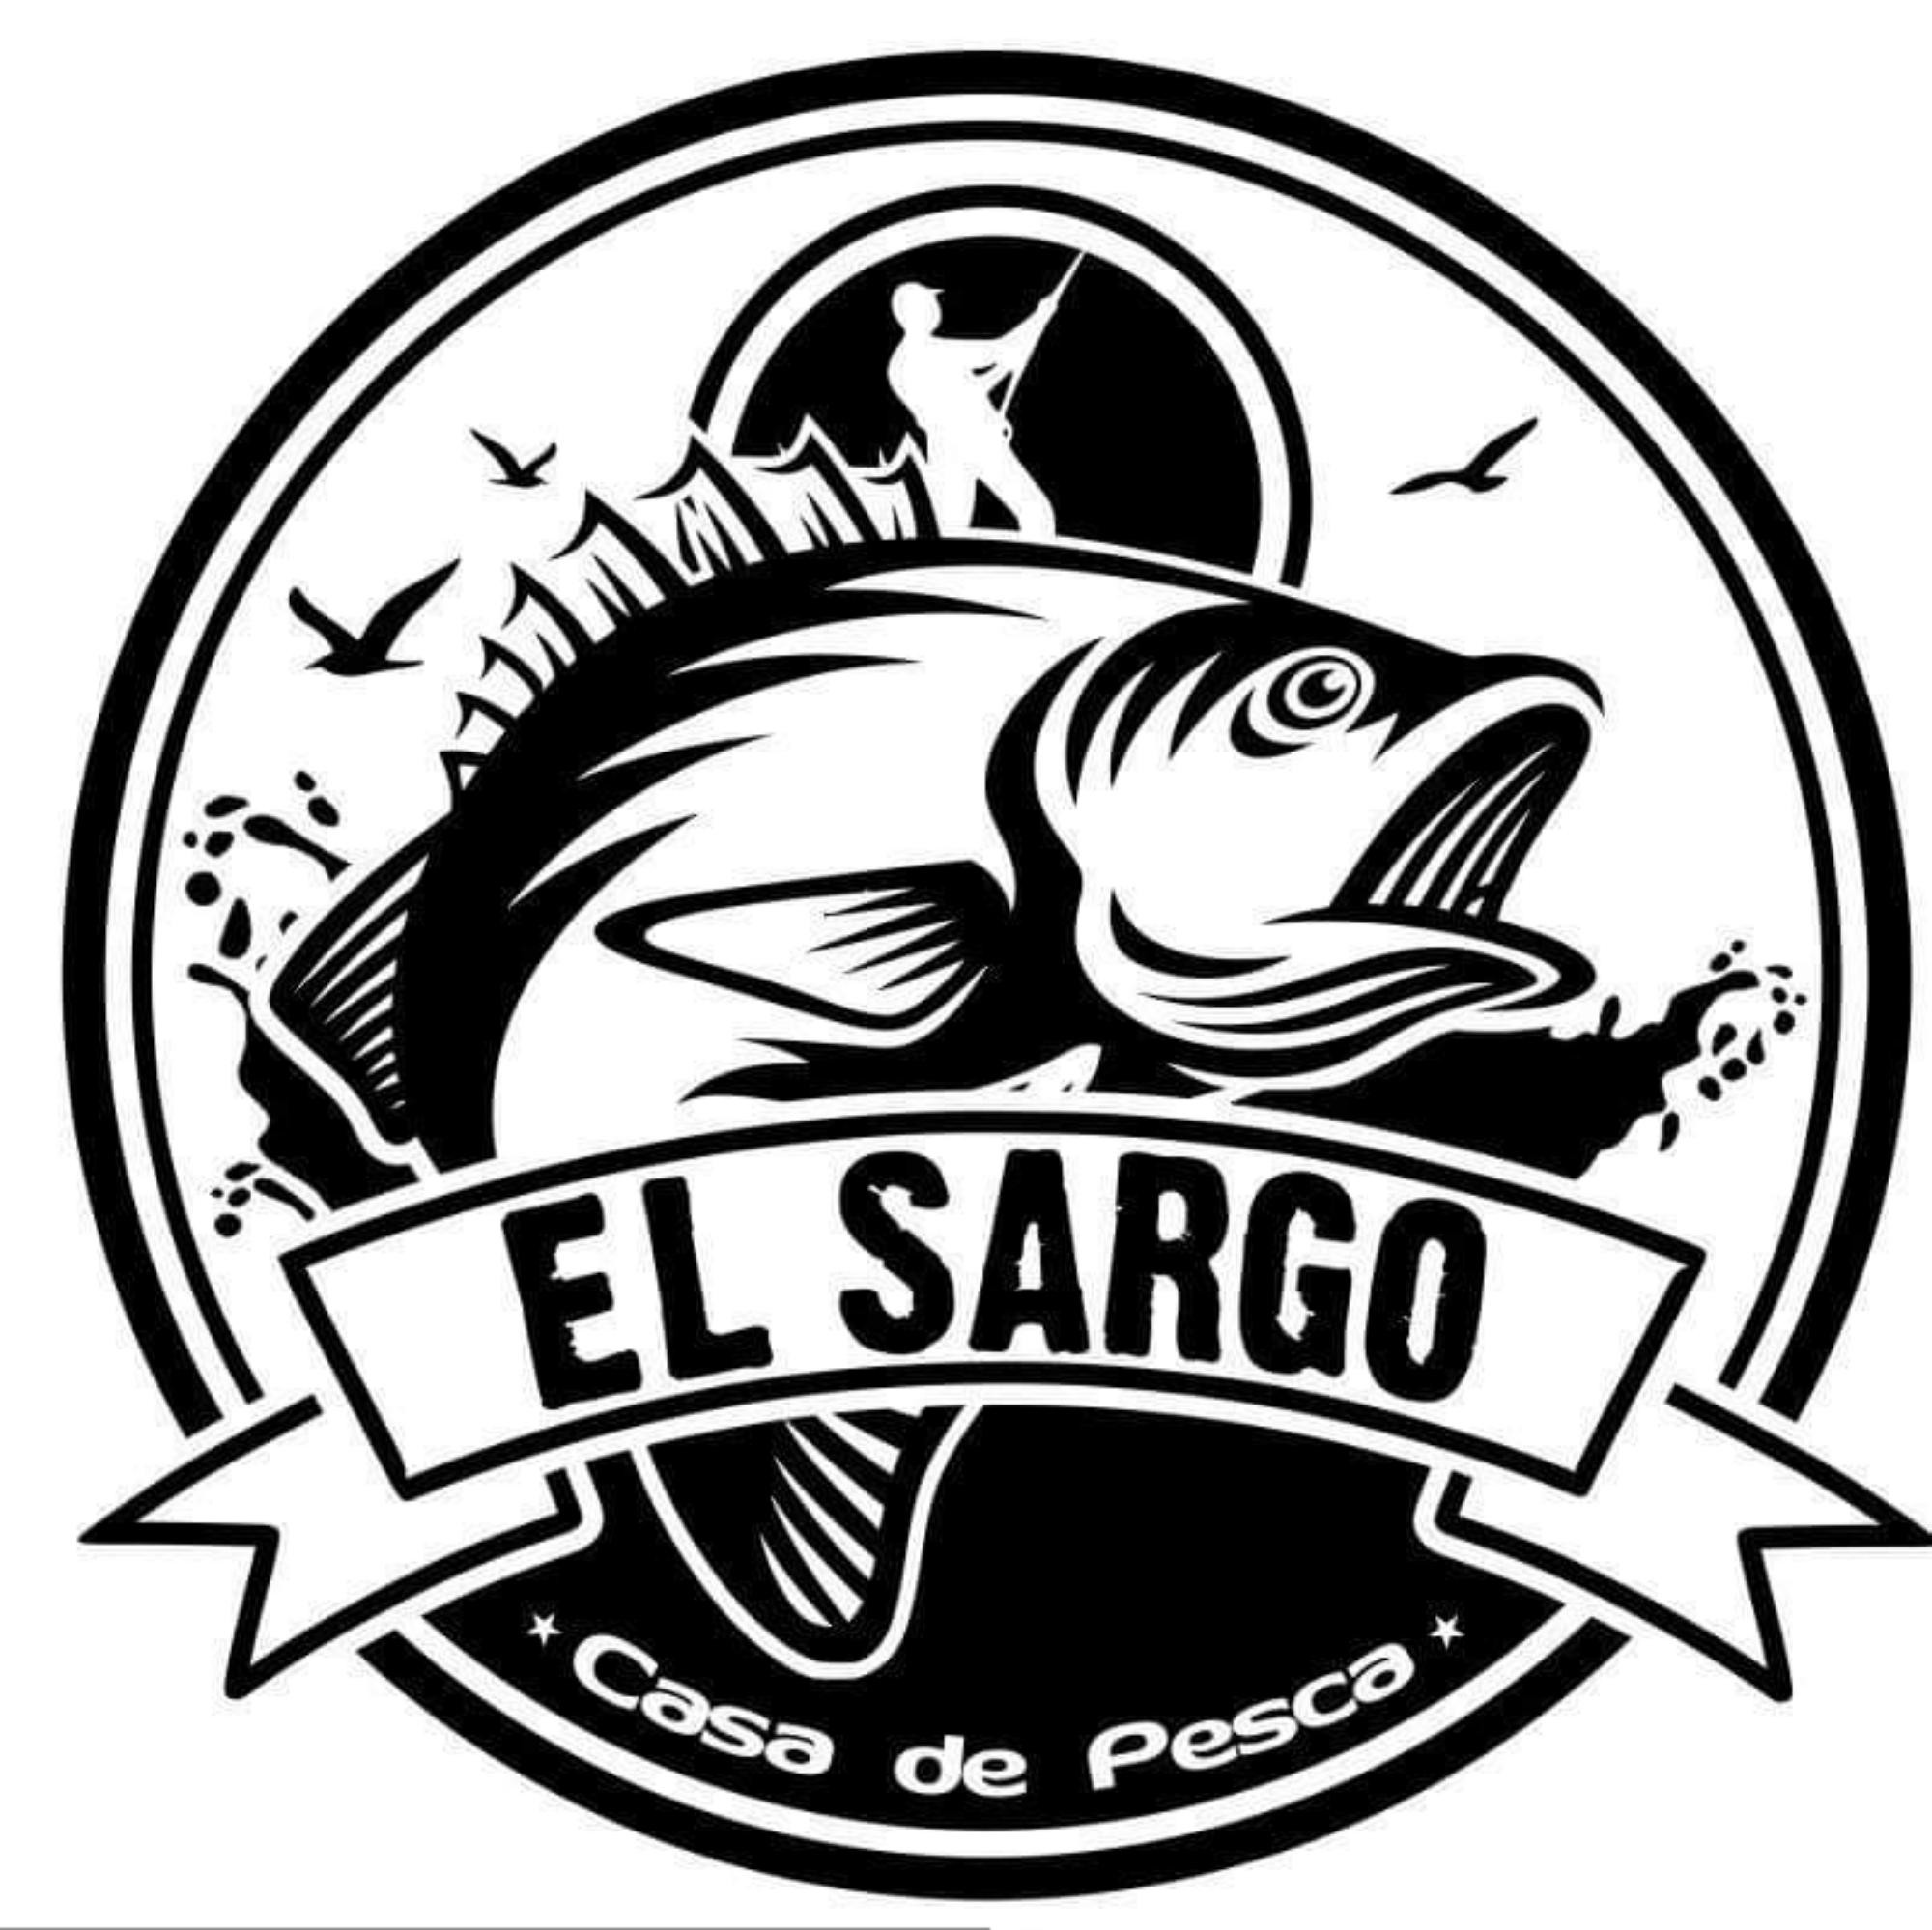 El Sargo Fishing Shop